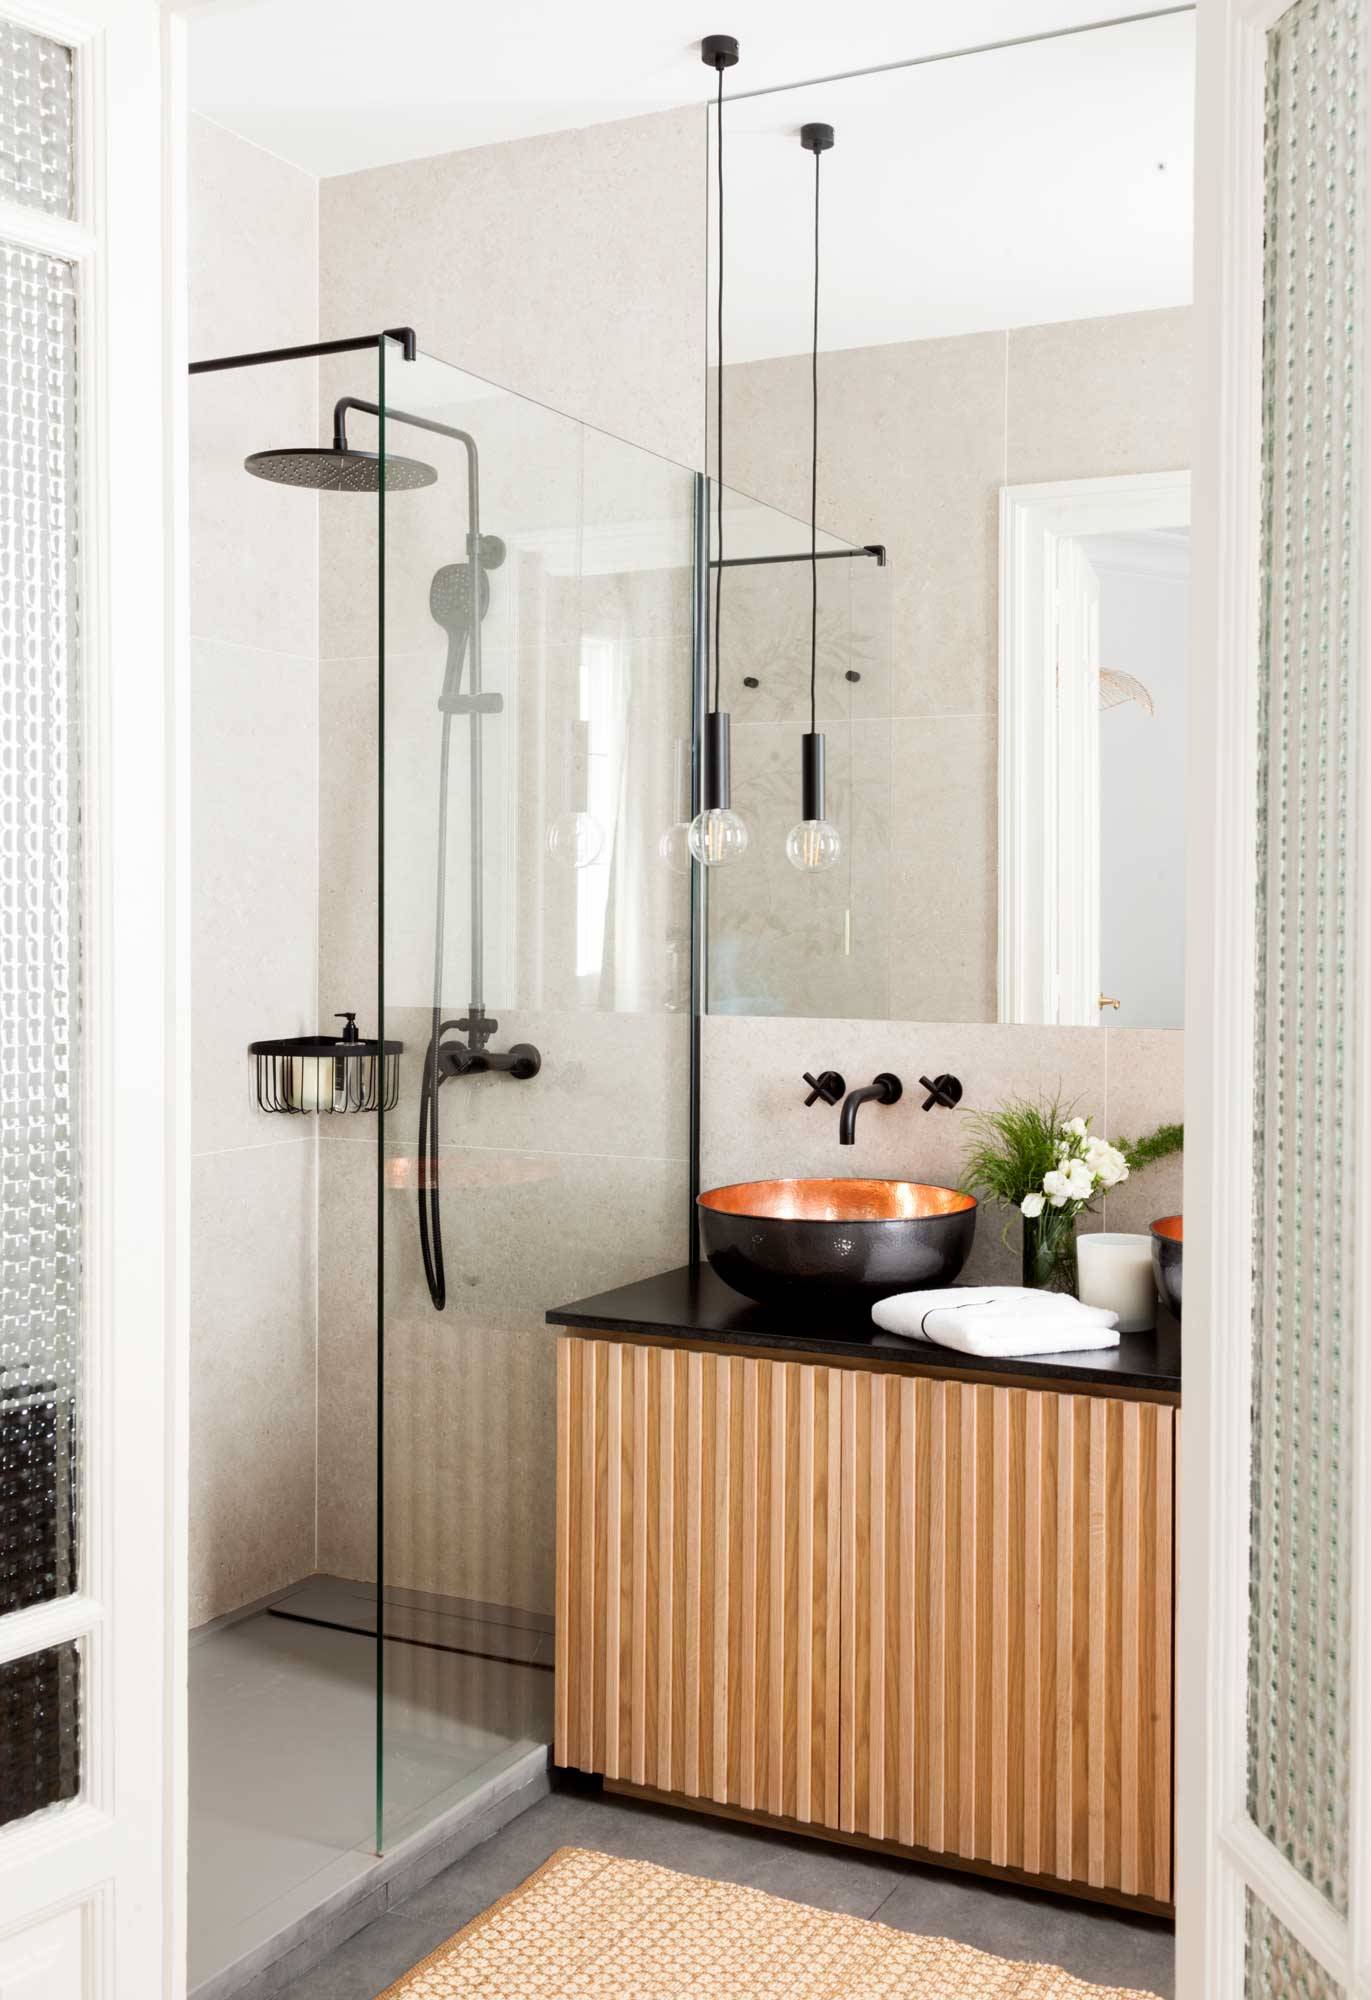 Baño pequeño y moderno con ducha, mampara y mueble de lavabo en negro y madera.